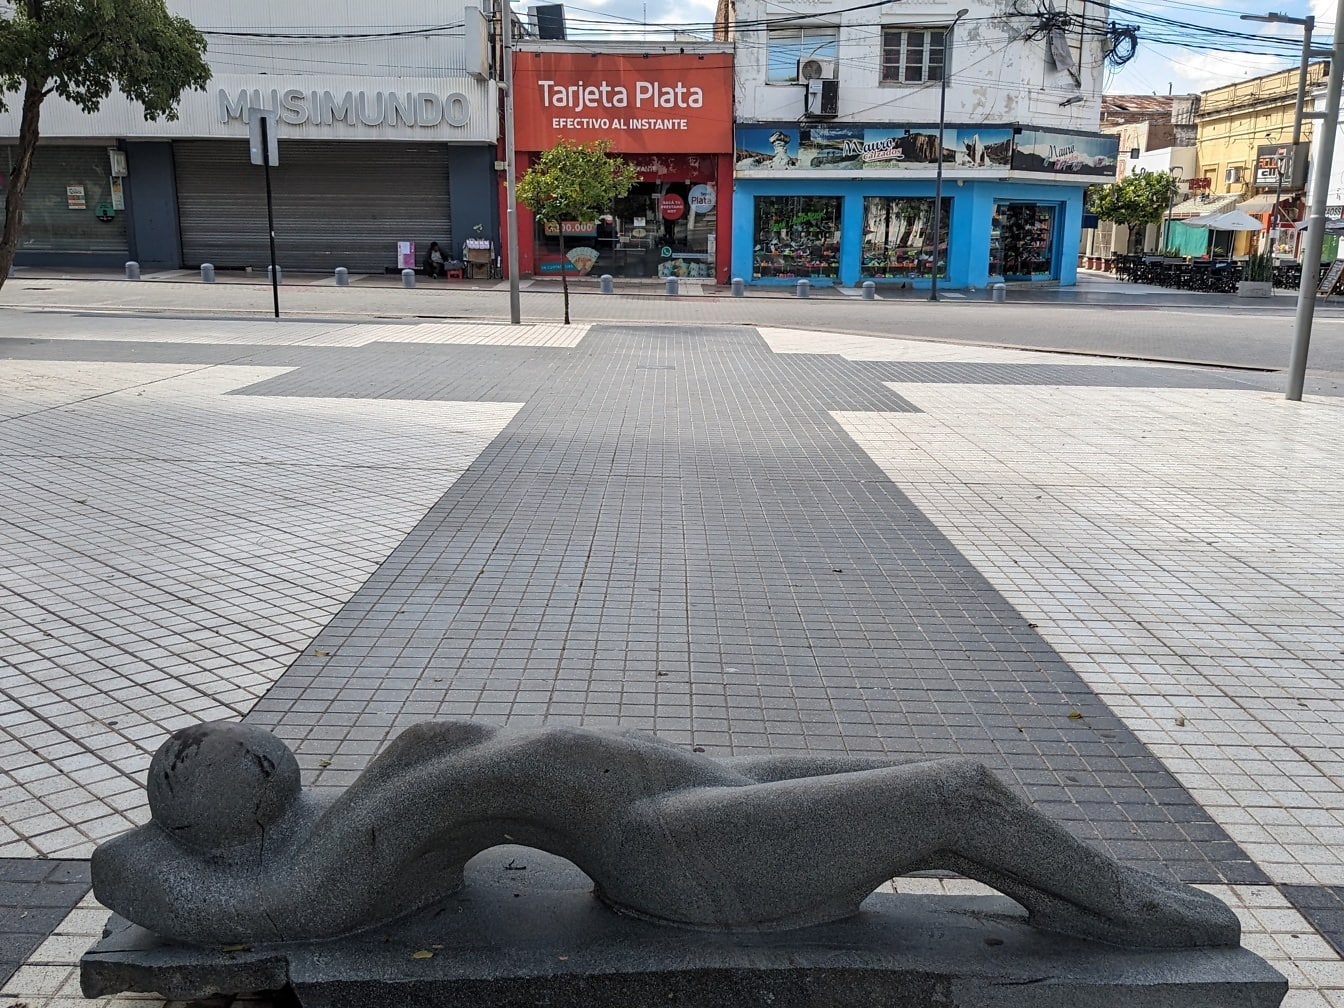 Socha ženy ležící na chodníku z černé žuly